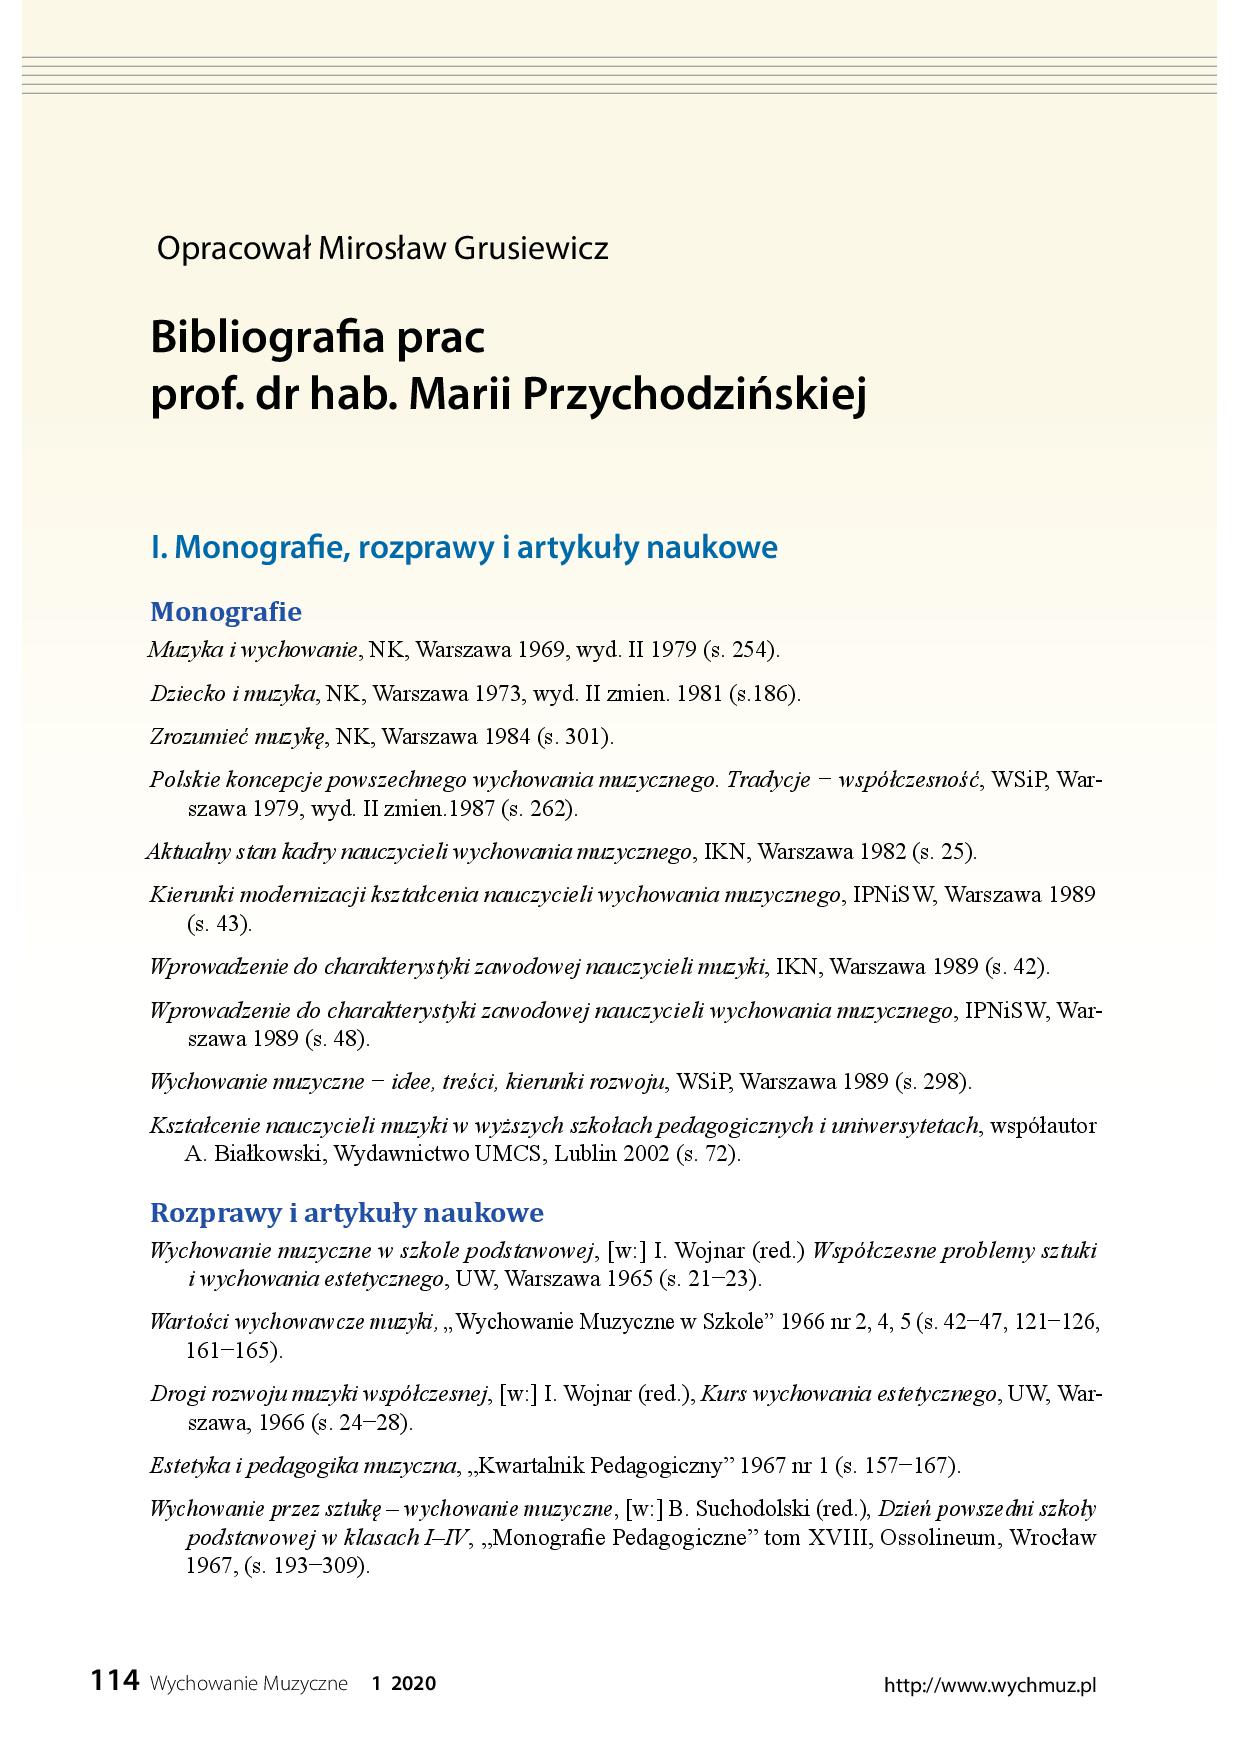 Bibliografia prac prof. dr hab. Marii Przychodzińskiej